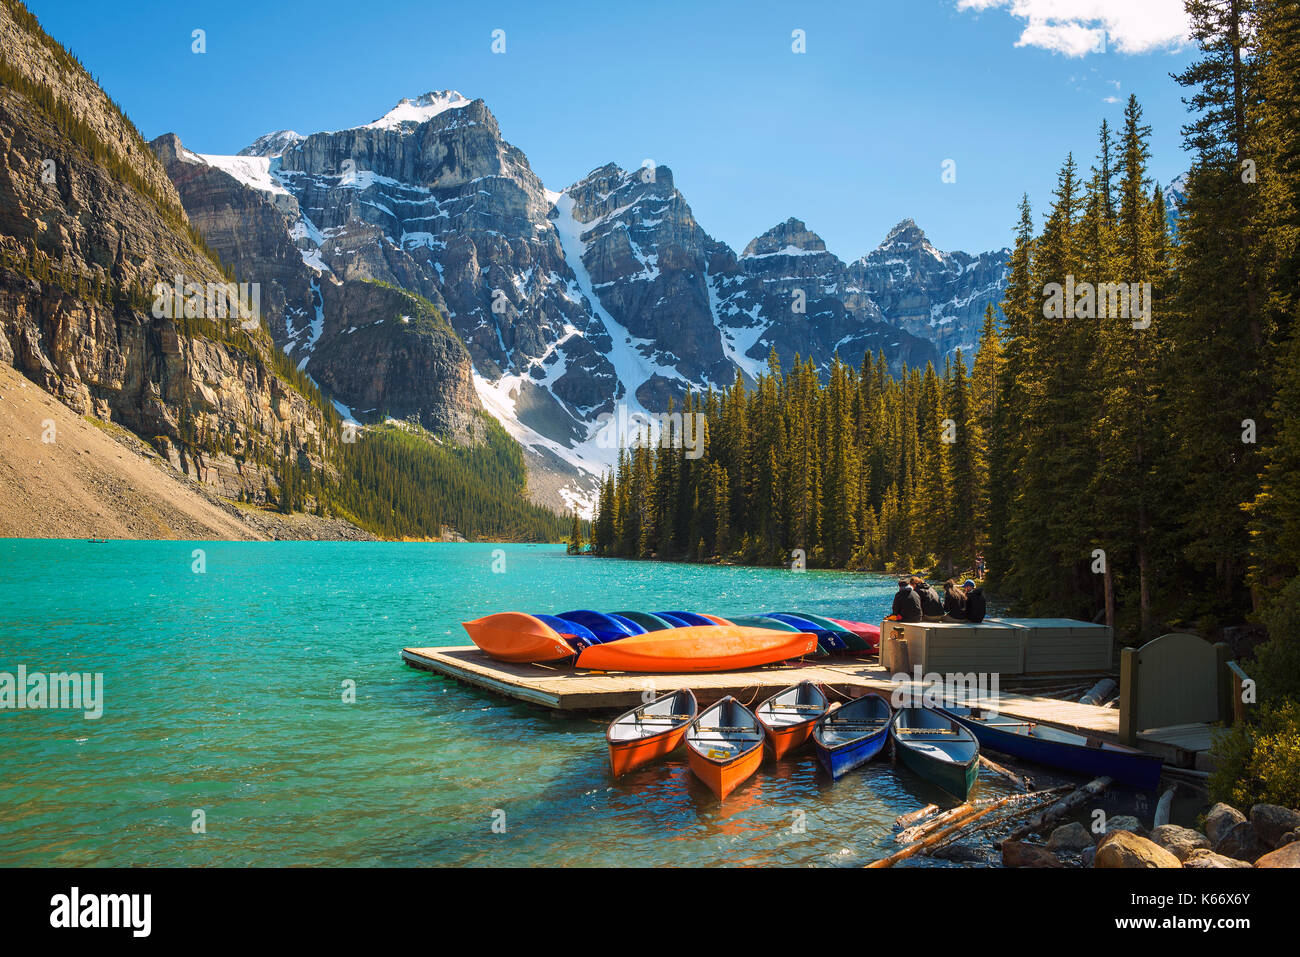 Canoës sur une jetée au lac Moraine, dans le parc national Banff, Alberta, Canada, avec les cimes enneigées des montagnes Rocheuses canadiennes, à l'arrière-plan. Banque D'Images